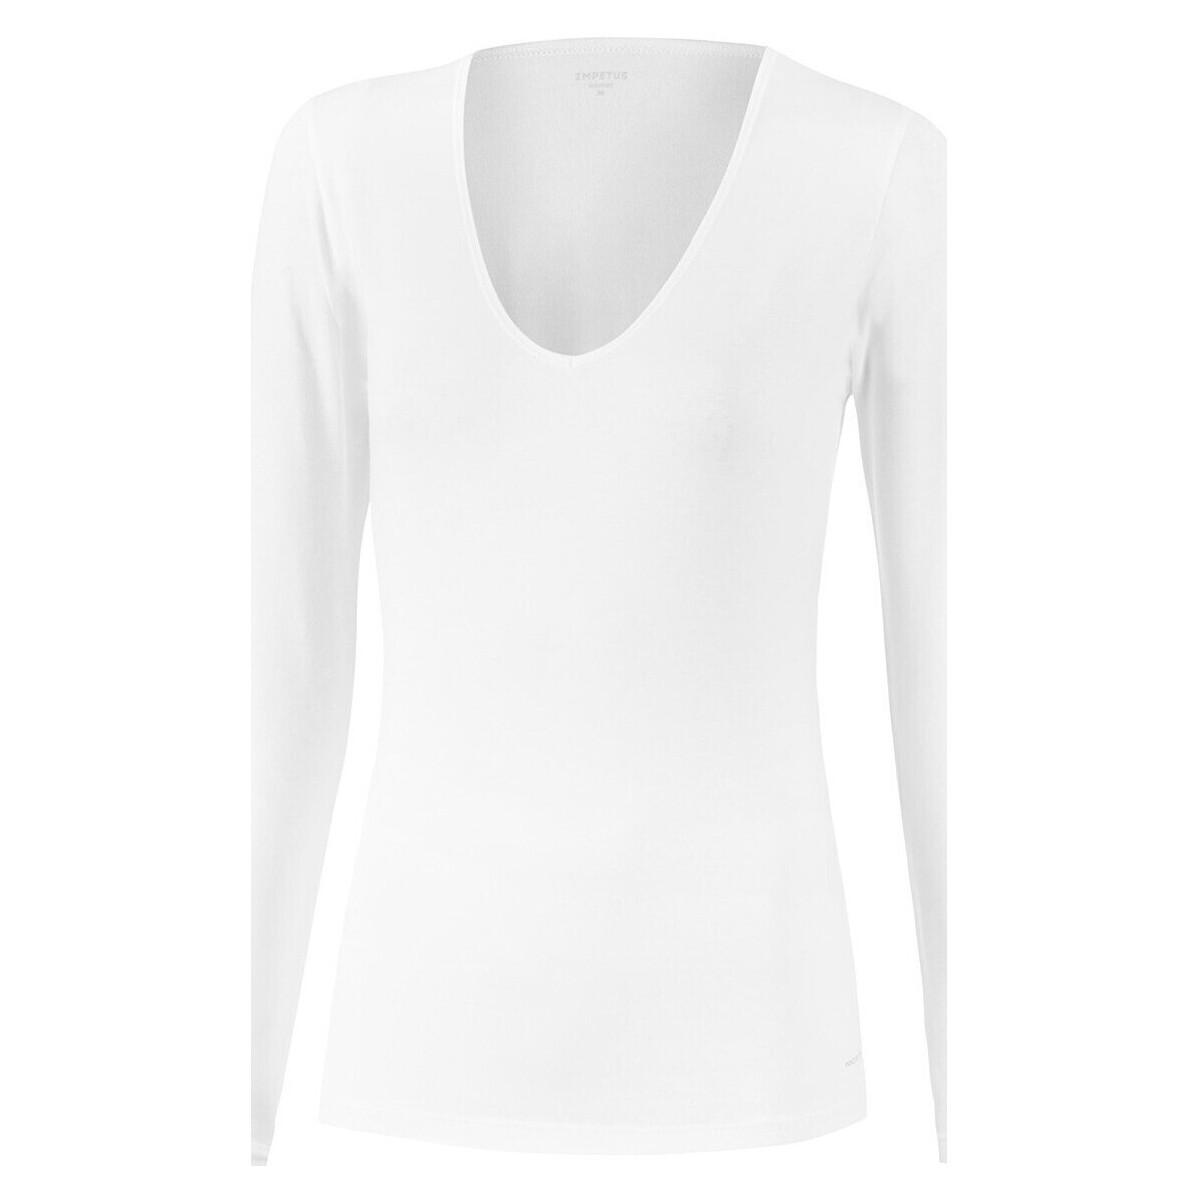 Μπλουζάκια με μακριά μανίκια Impetus Innovation Woman 8361898 001 Ύφασμα